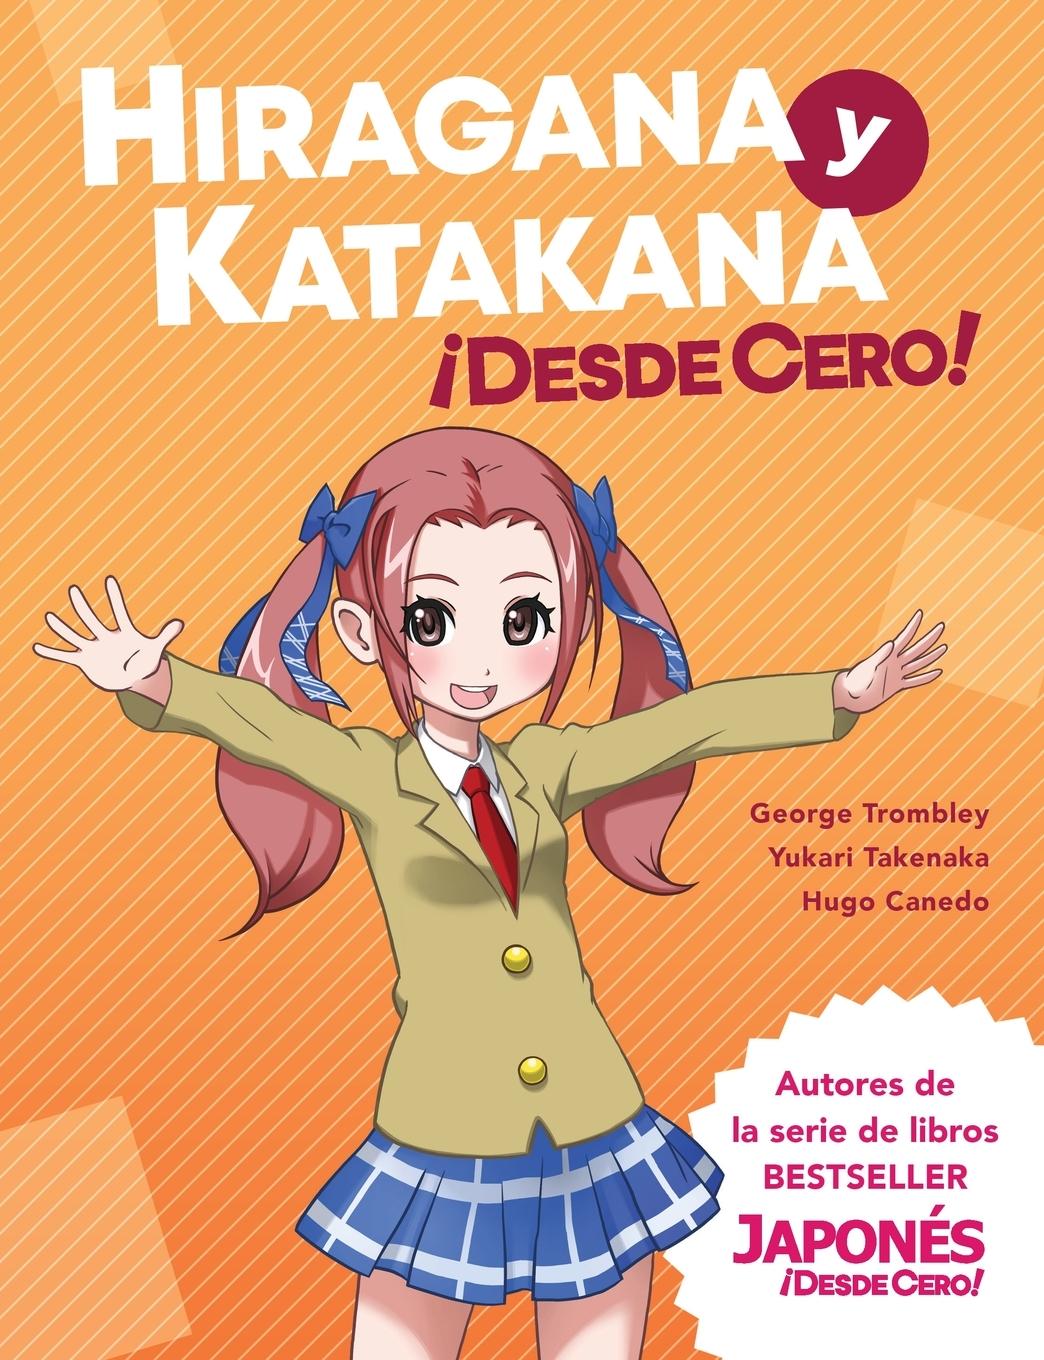 Book Hiragana y Katakana !Desde Cero! Yukari Takenaka